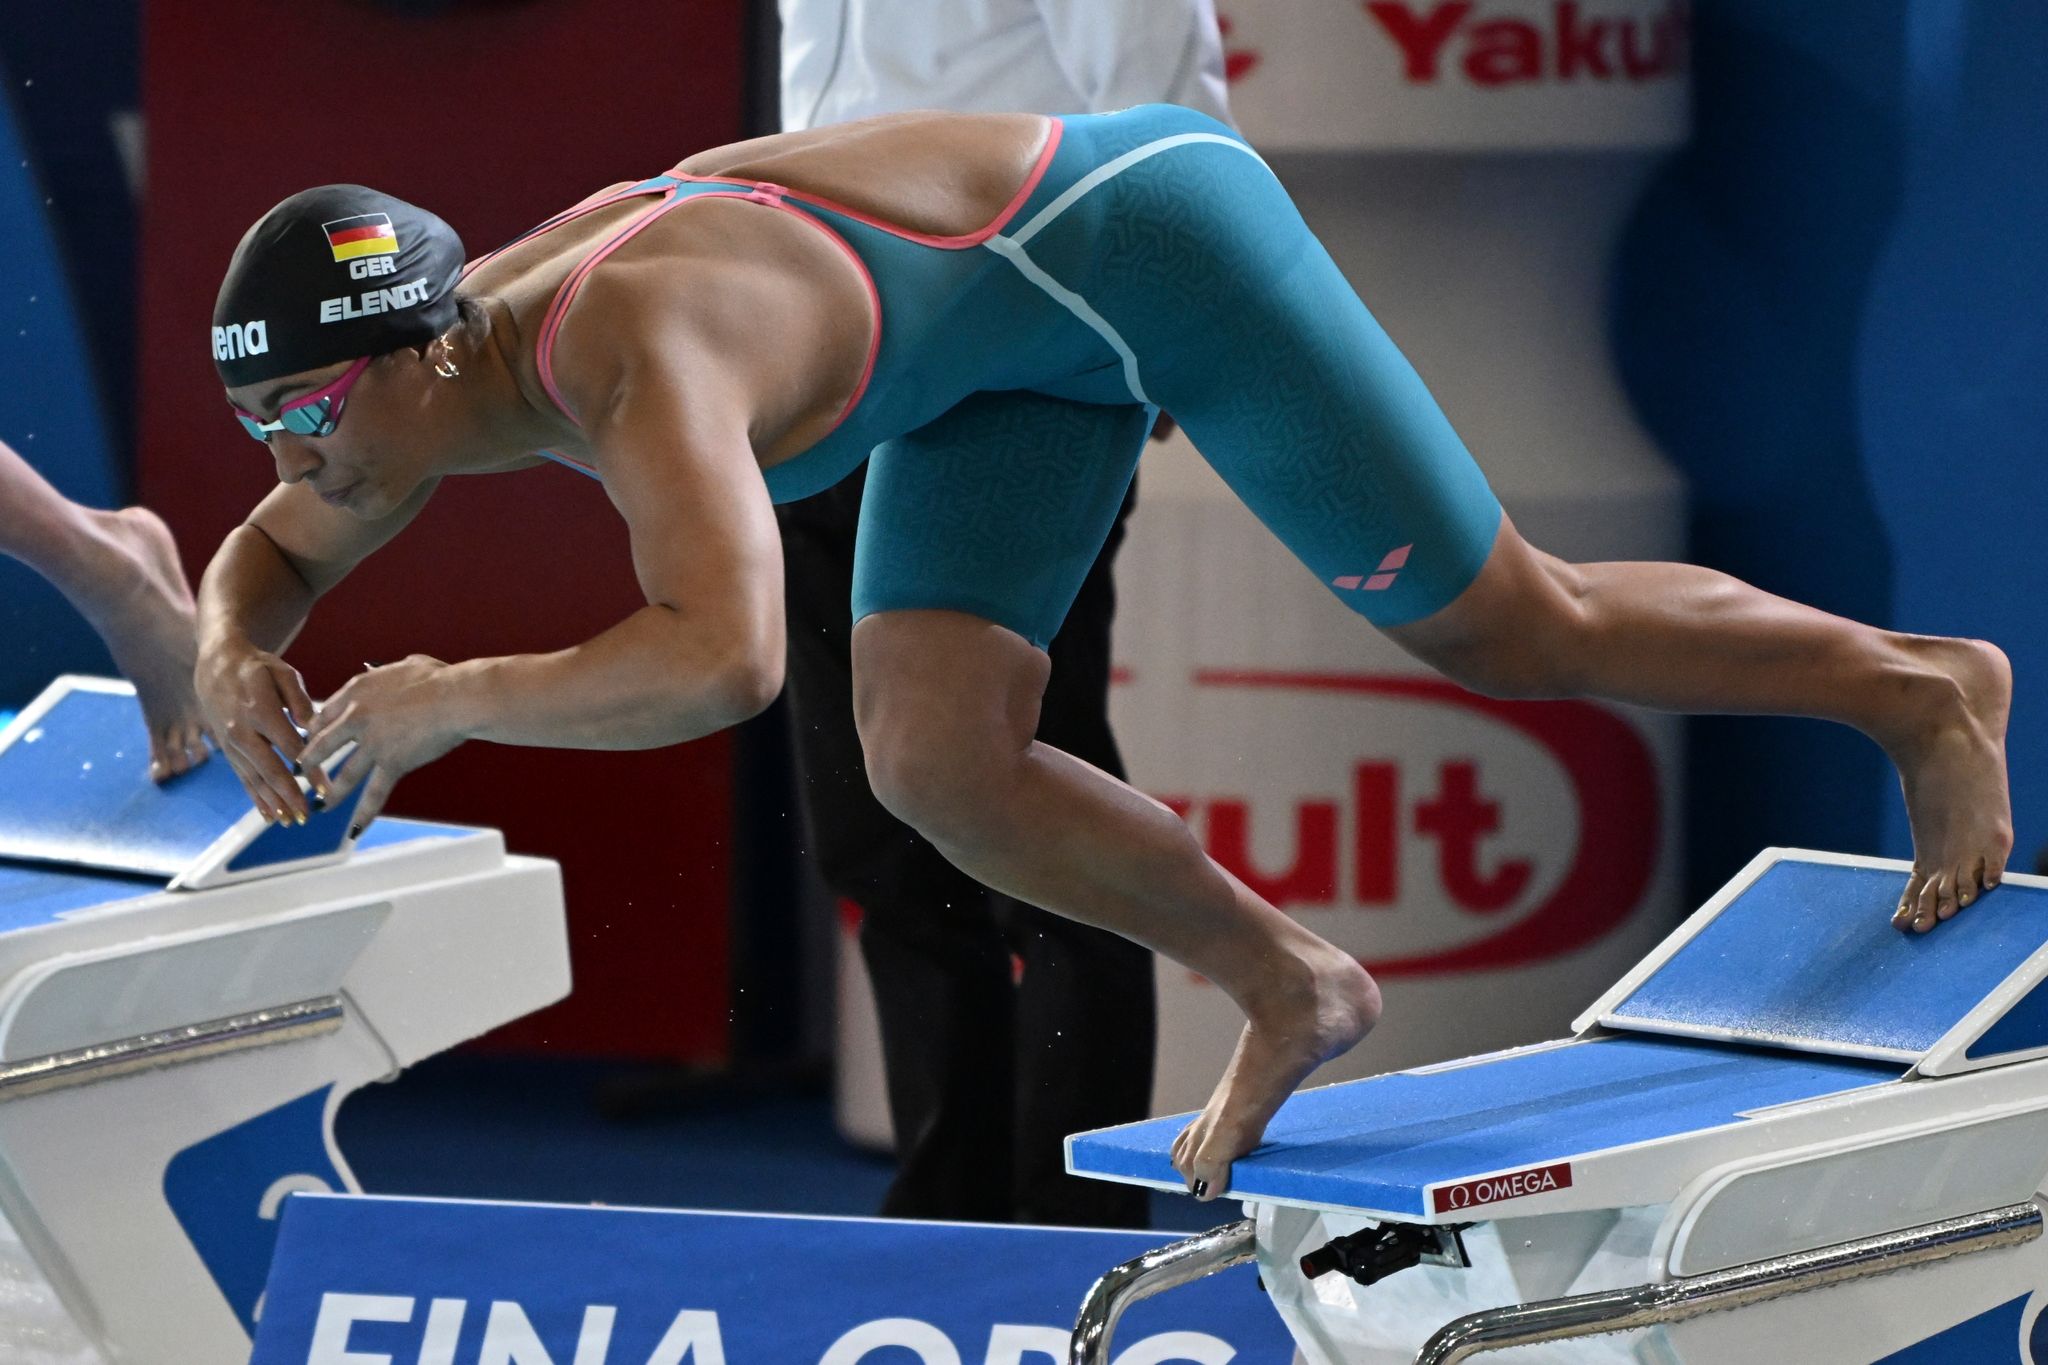 Schwimmerin Anna Elendt beim Start.